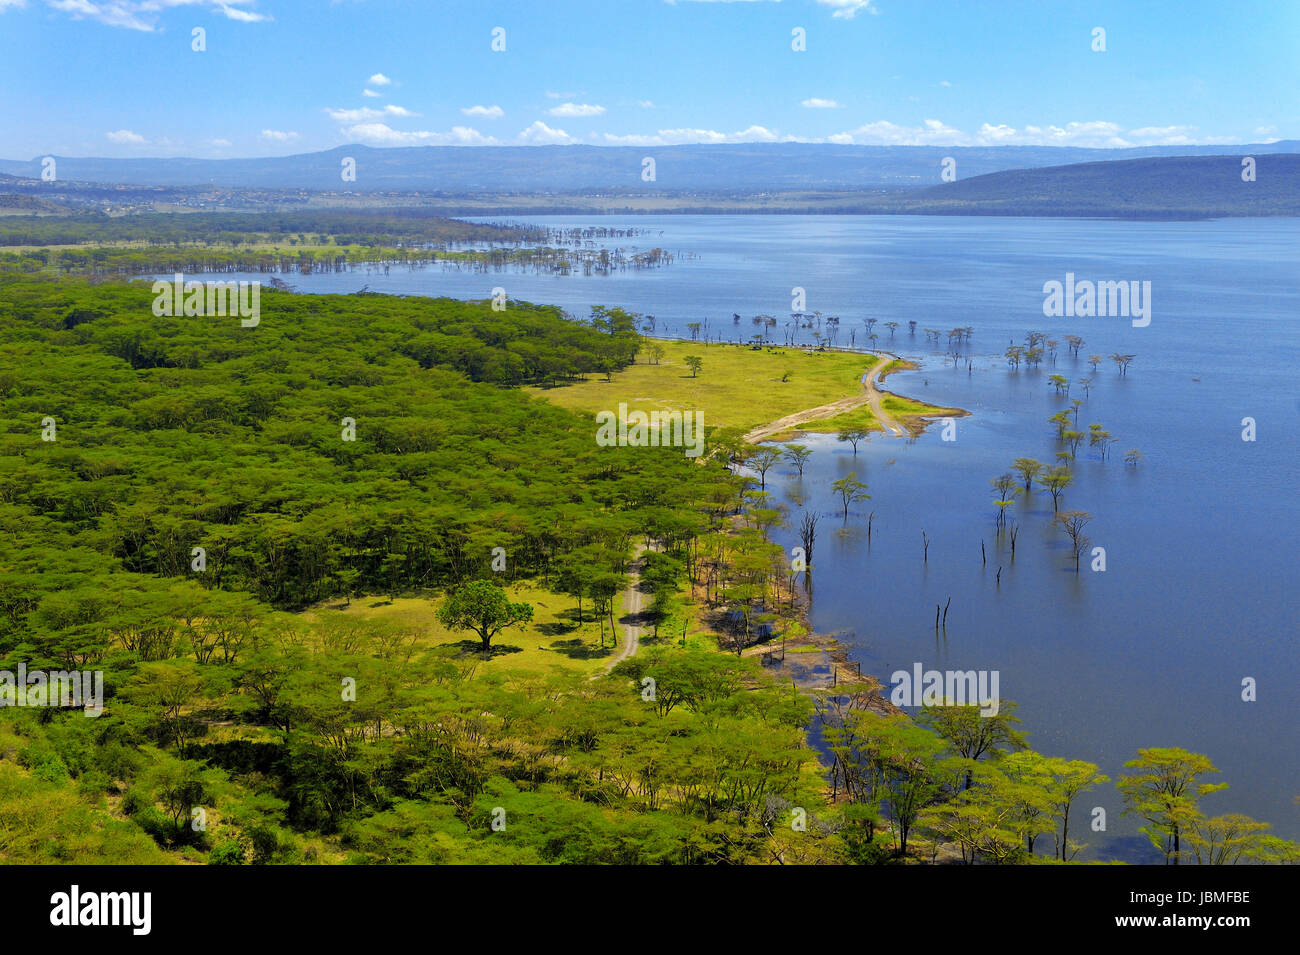 African landscape, bird's-eye view on lake Nakuru, Kenya Stock Photo